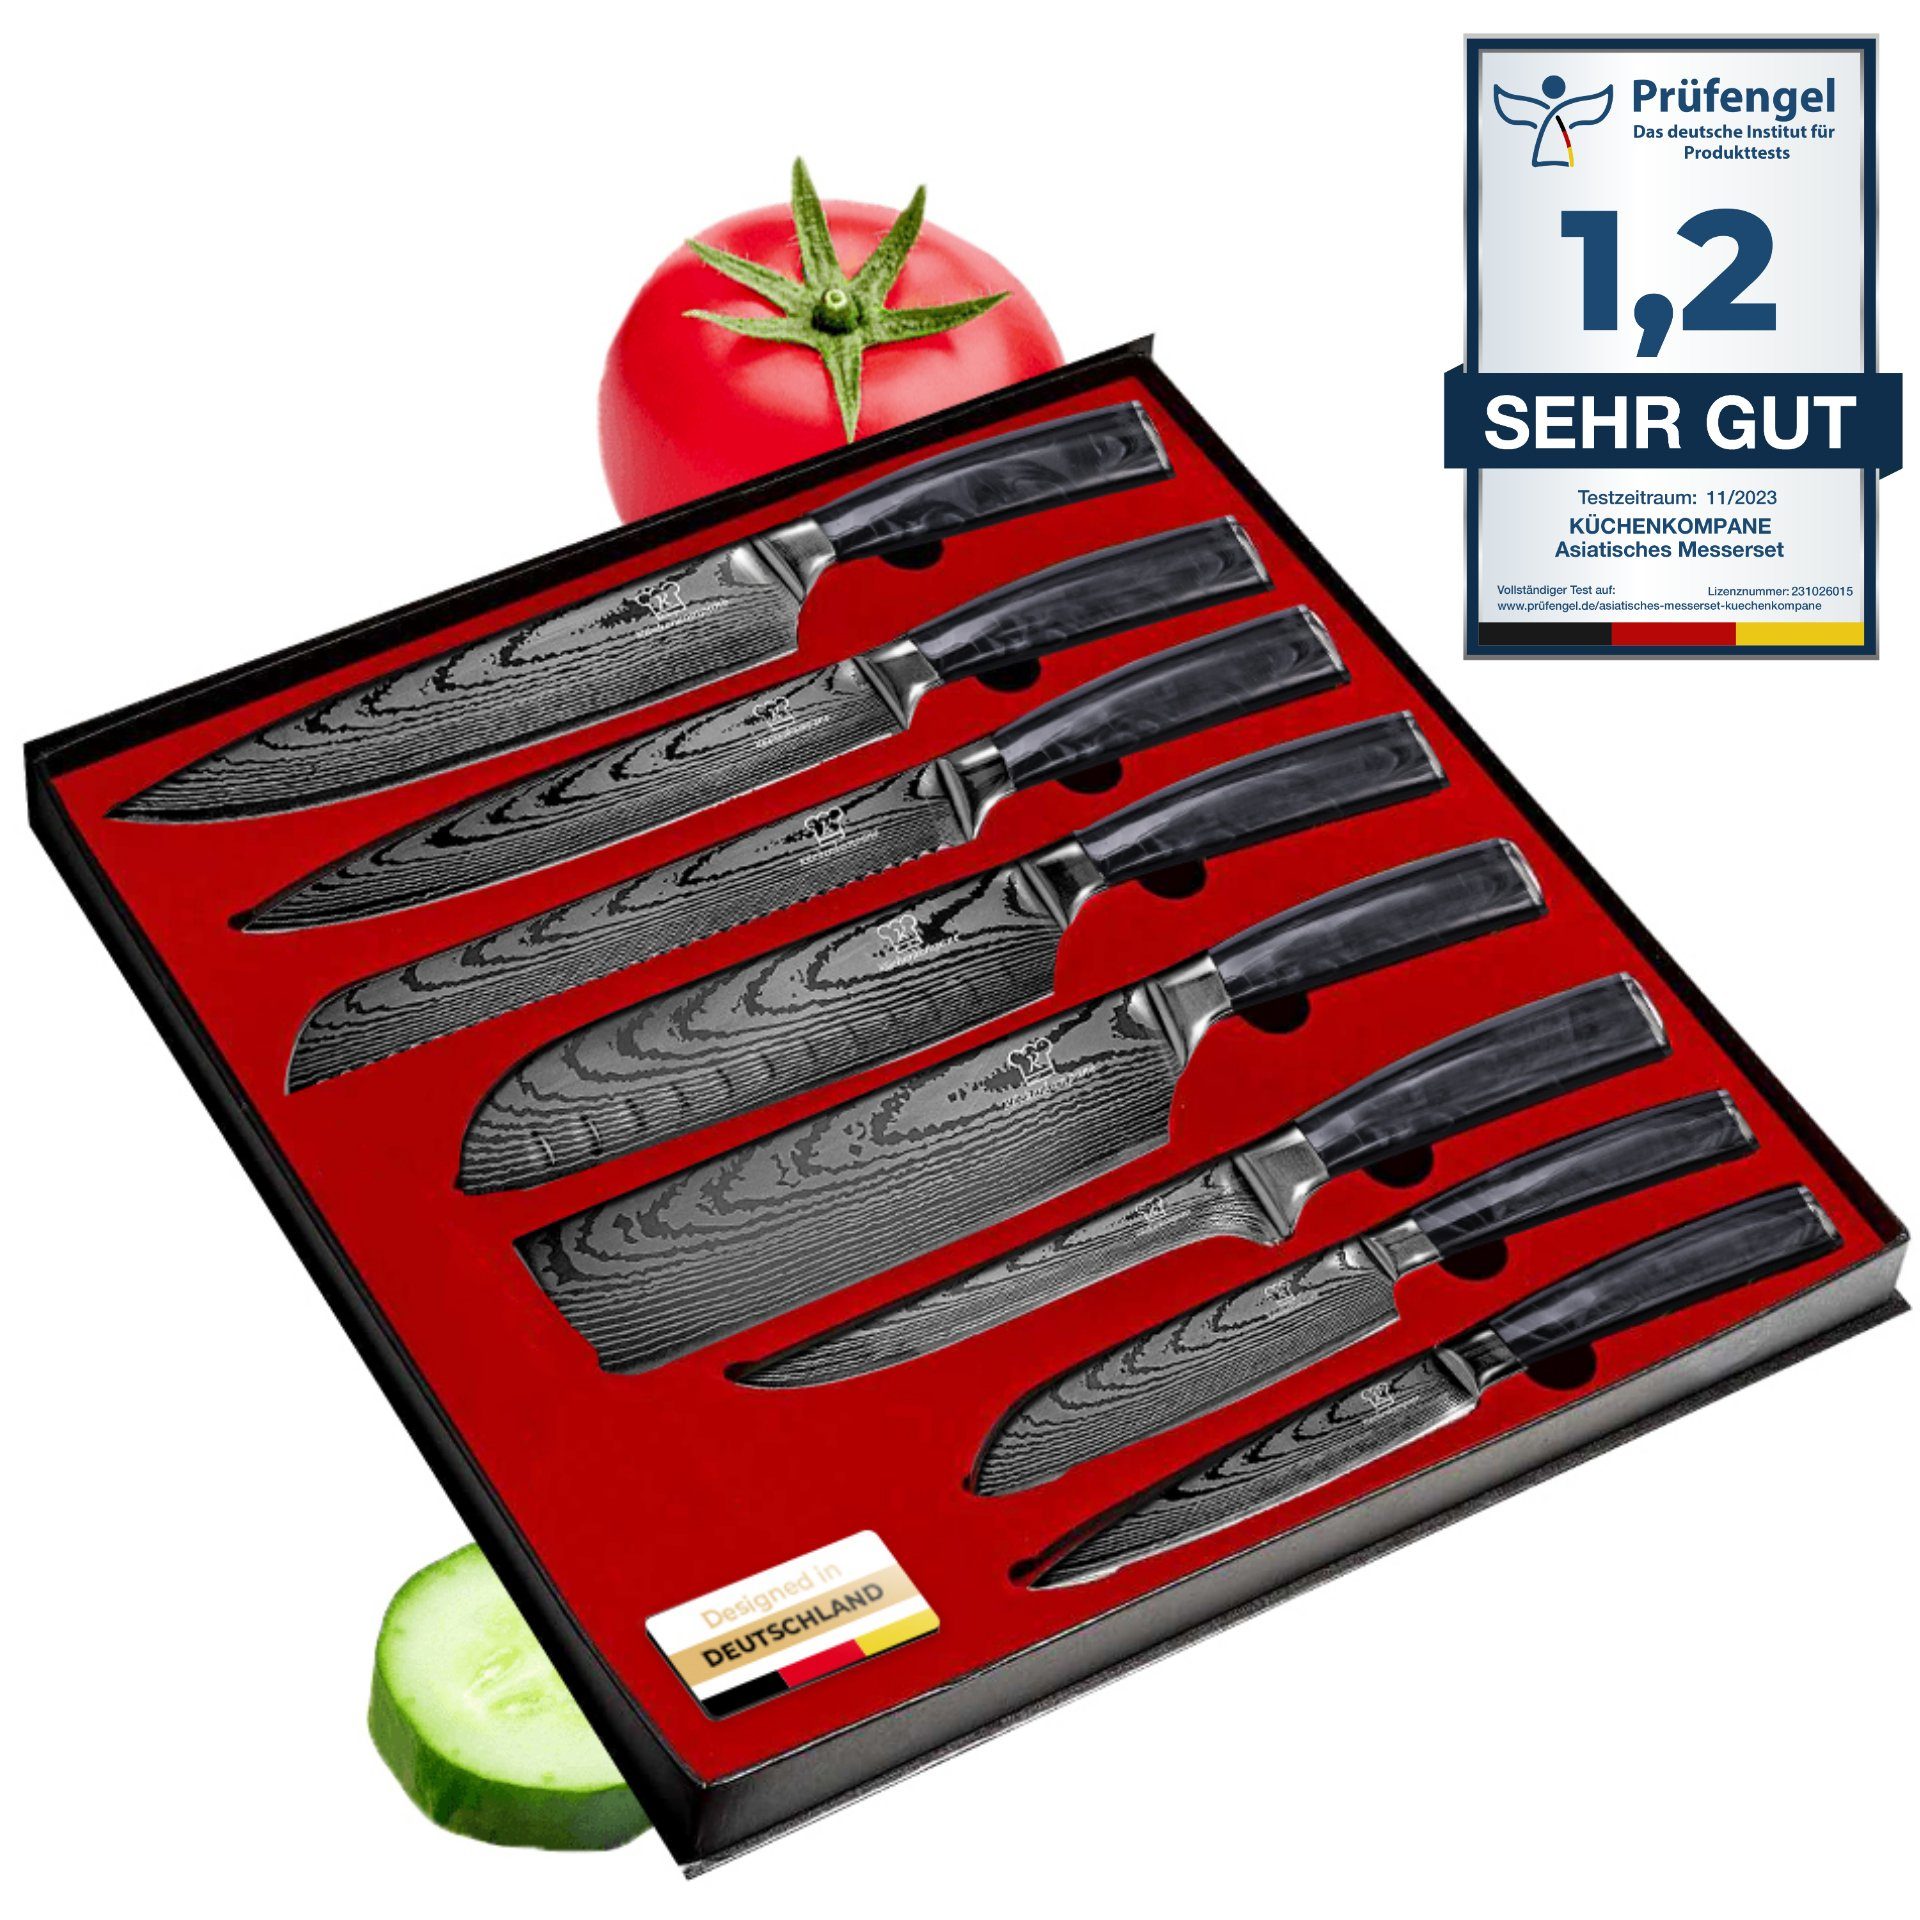 RHEINSTAHL Messersets online kaufen | OTTO